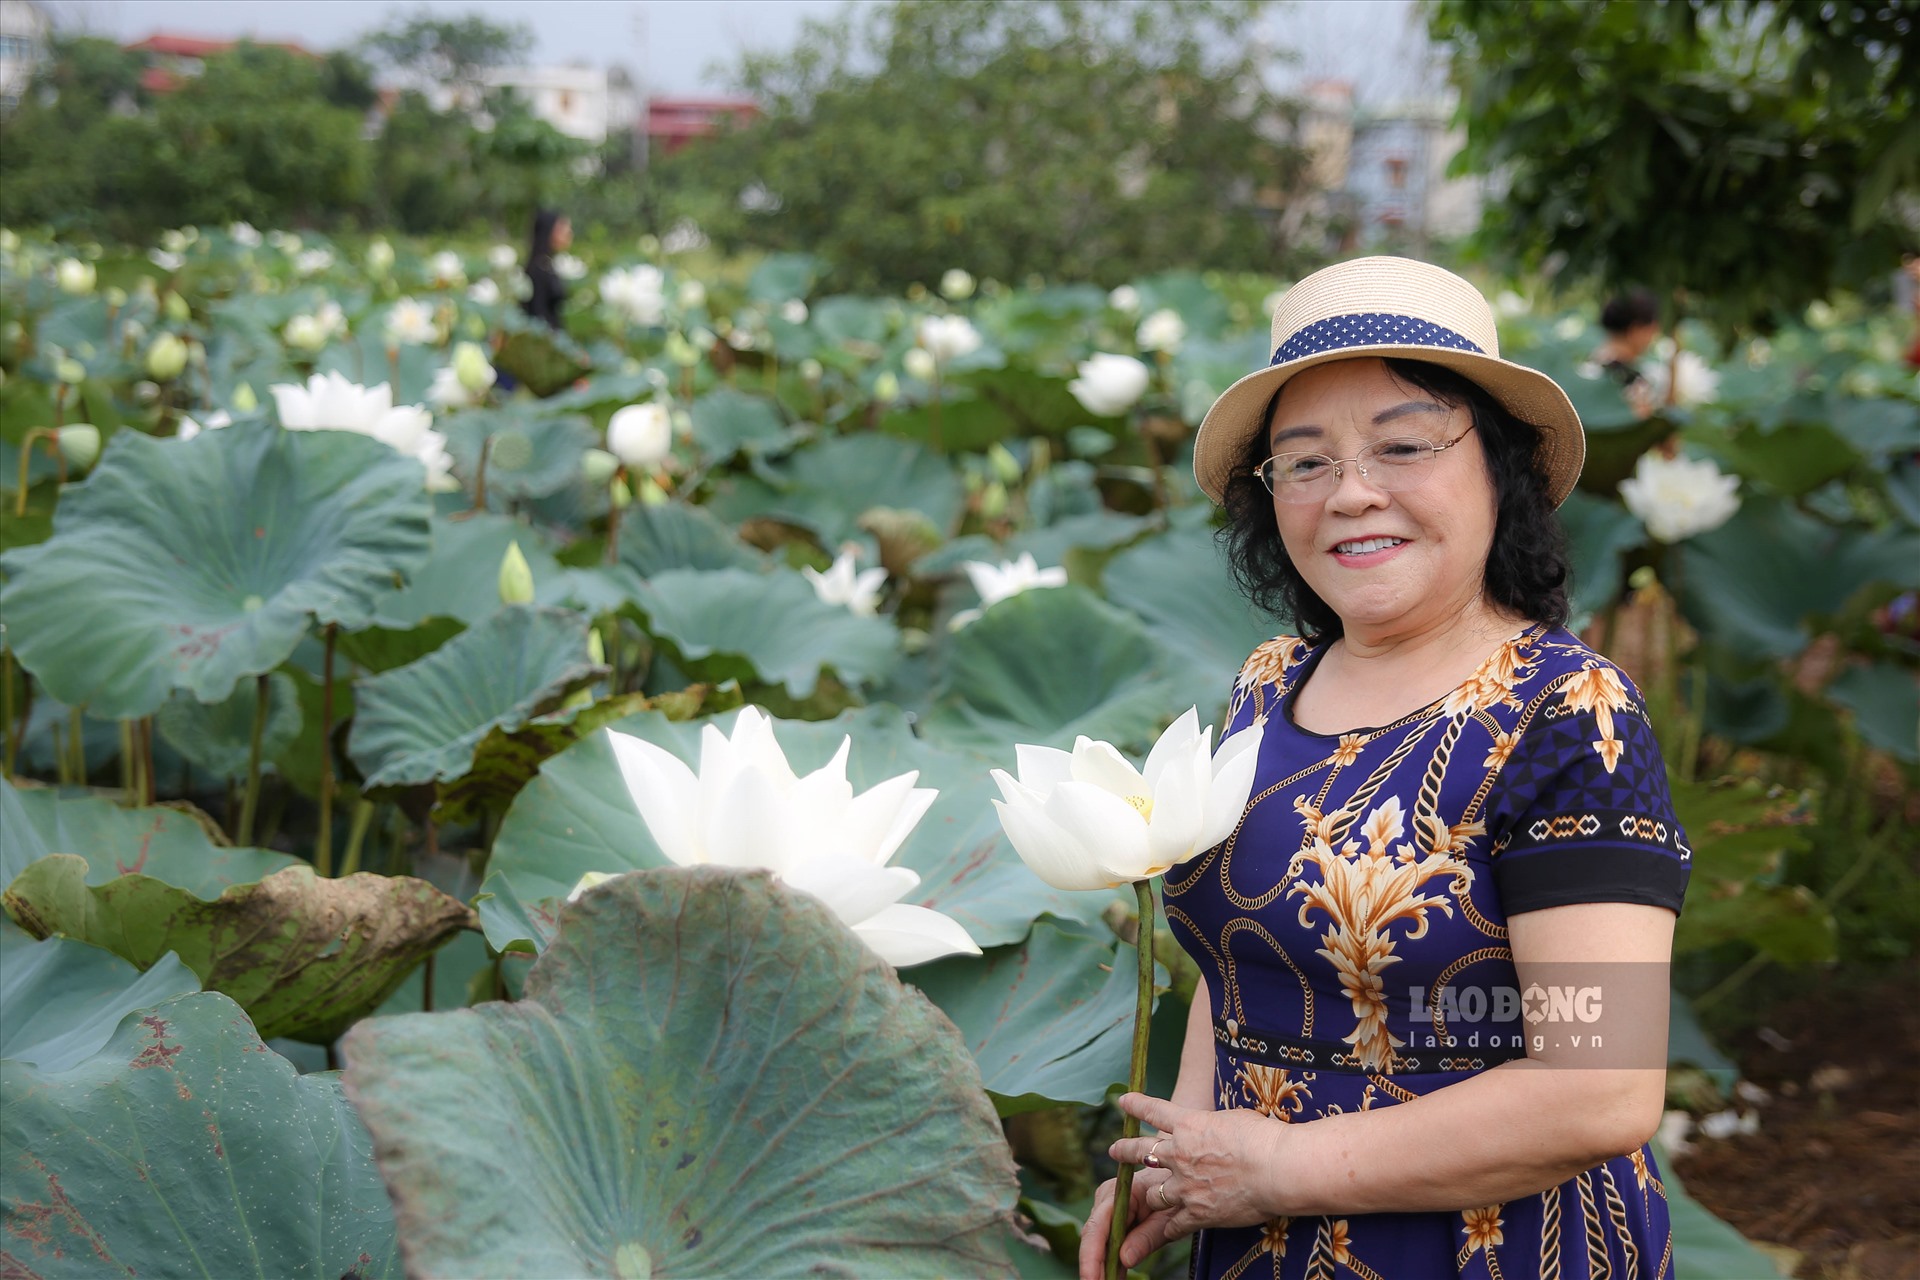 Thưởng thức vẻ đẹp của đầm sen trắng độc nhất vô nhị tại Hà Nội